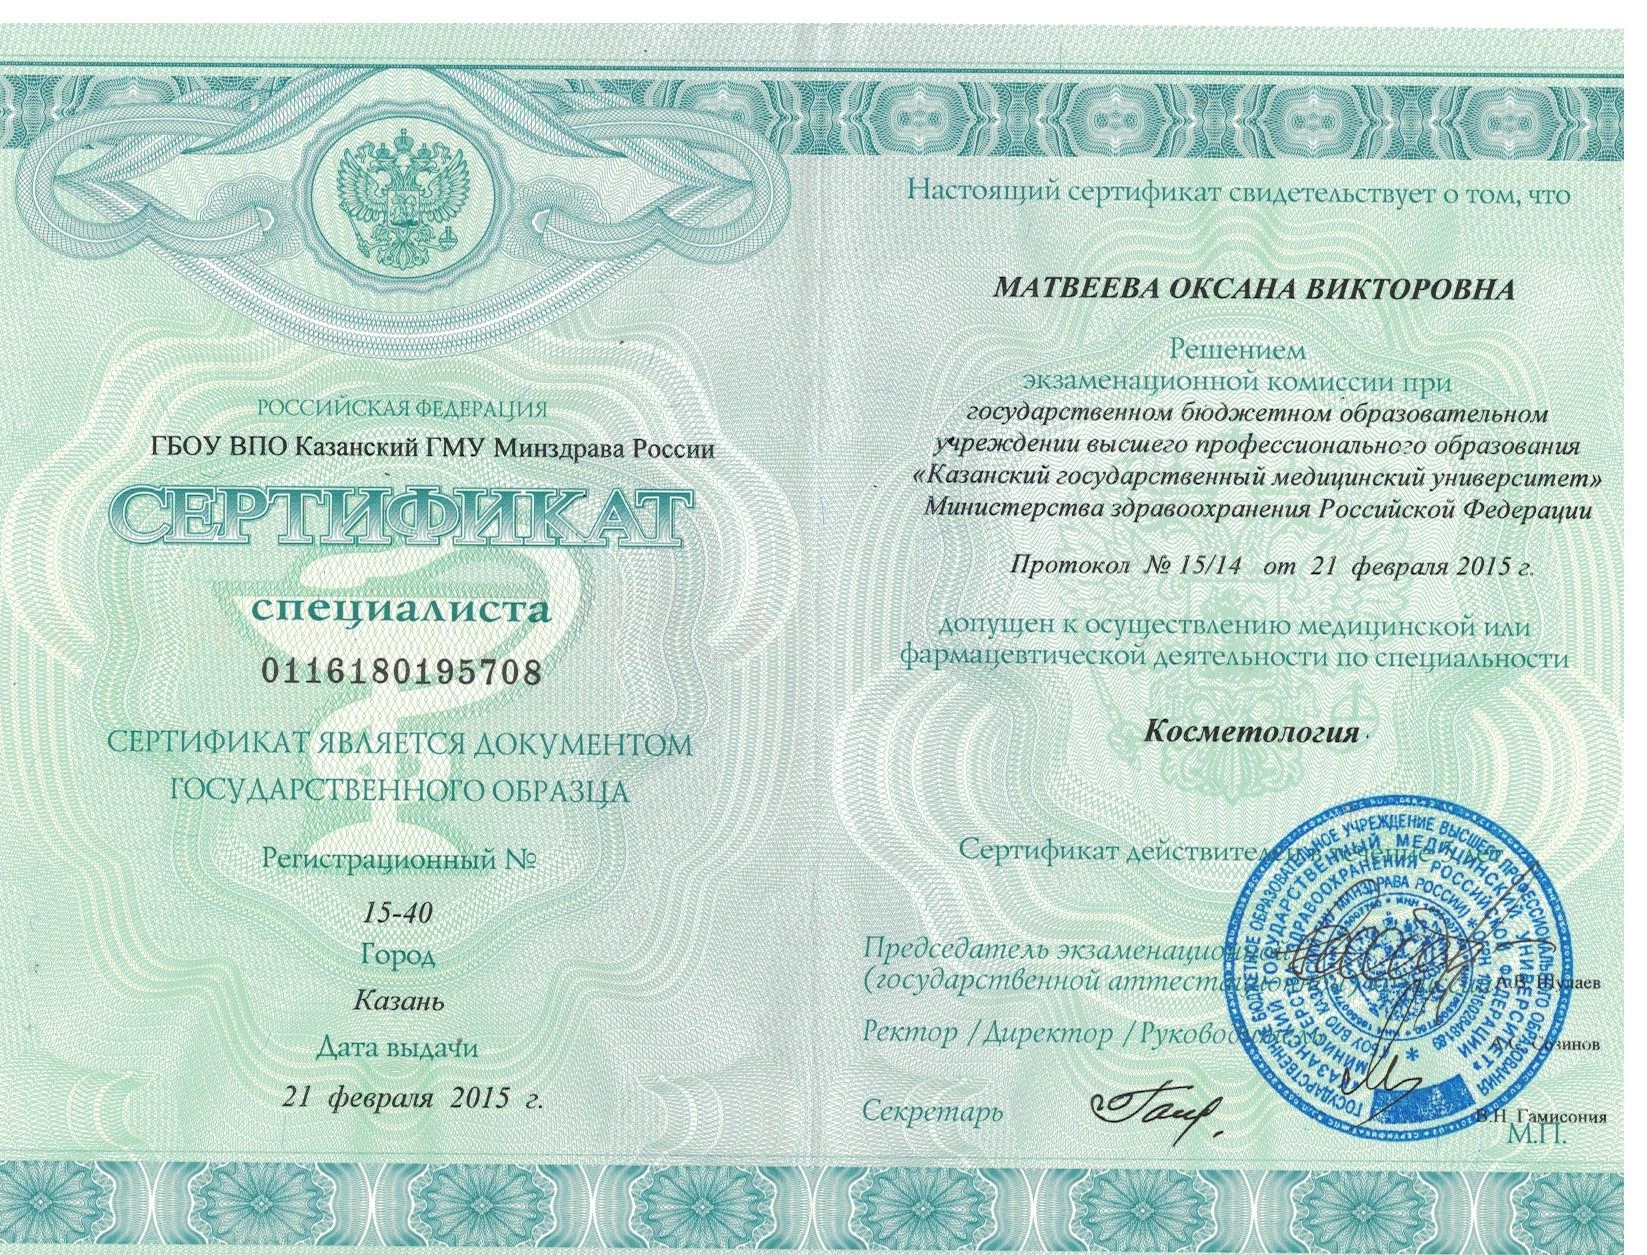 Сертификат Матвеевой Оксаны